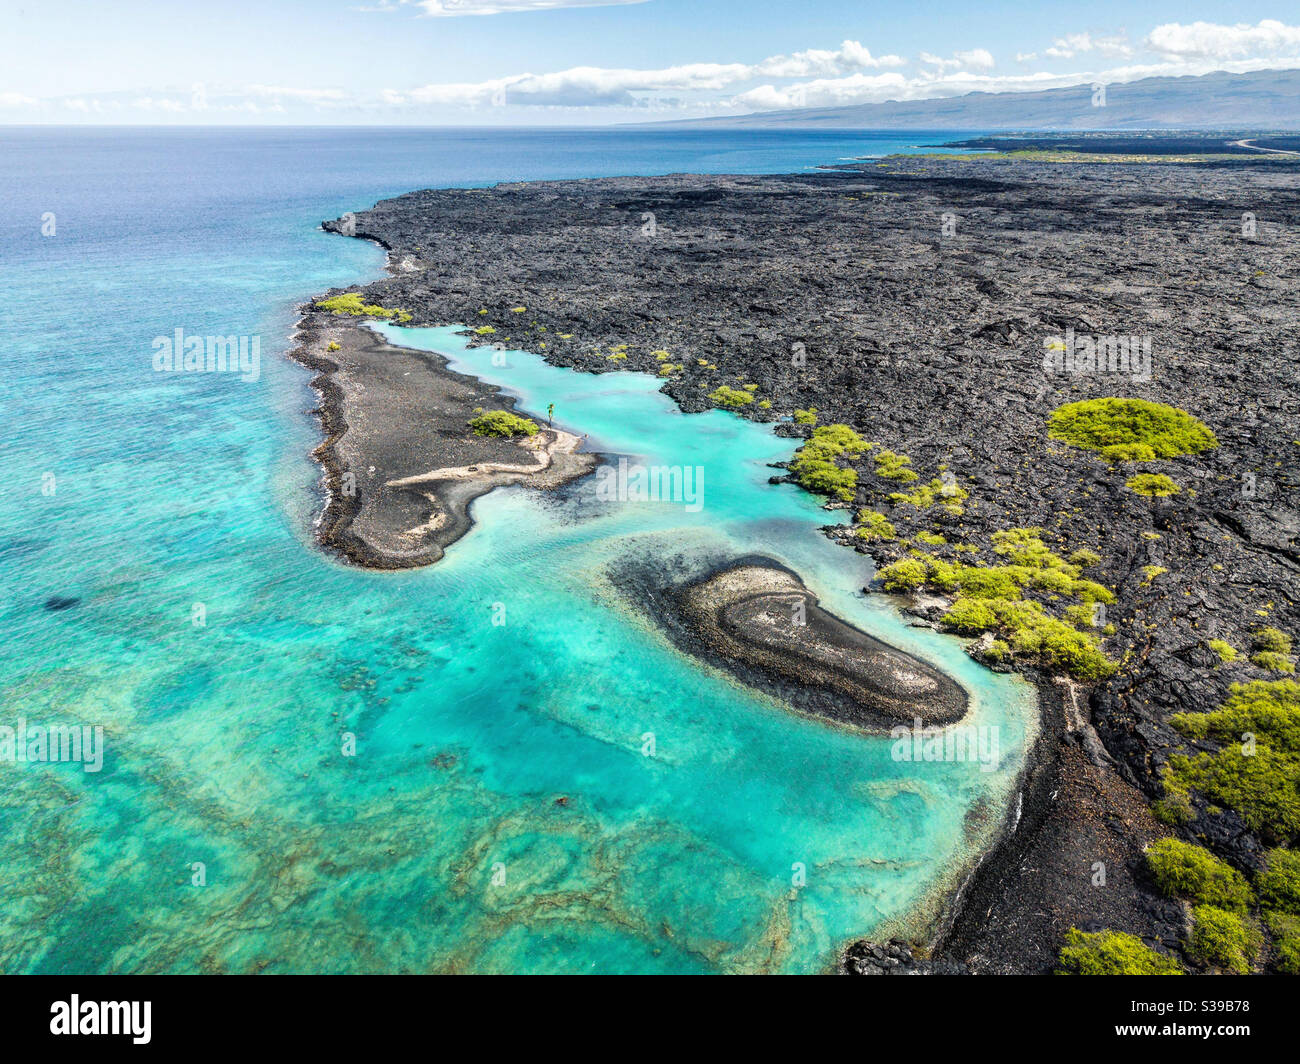 Luftaufnahme der Kiholo Bay auf der Big Island von Hawaii mit ihren schwarzen Sandstränden, dem aquafarbenen Wasser und kleinen Inseln. Stockfoto